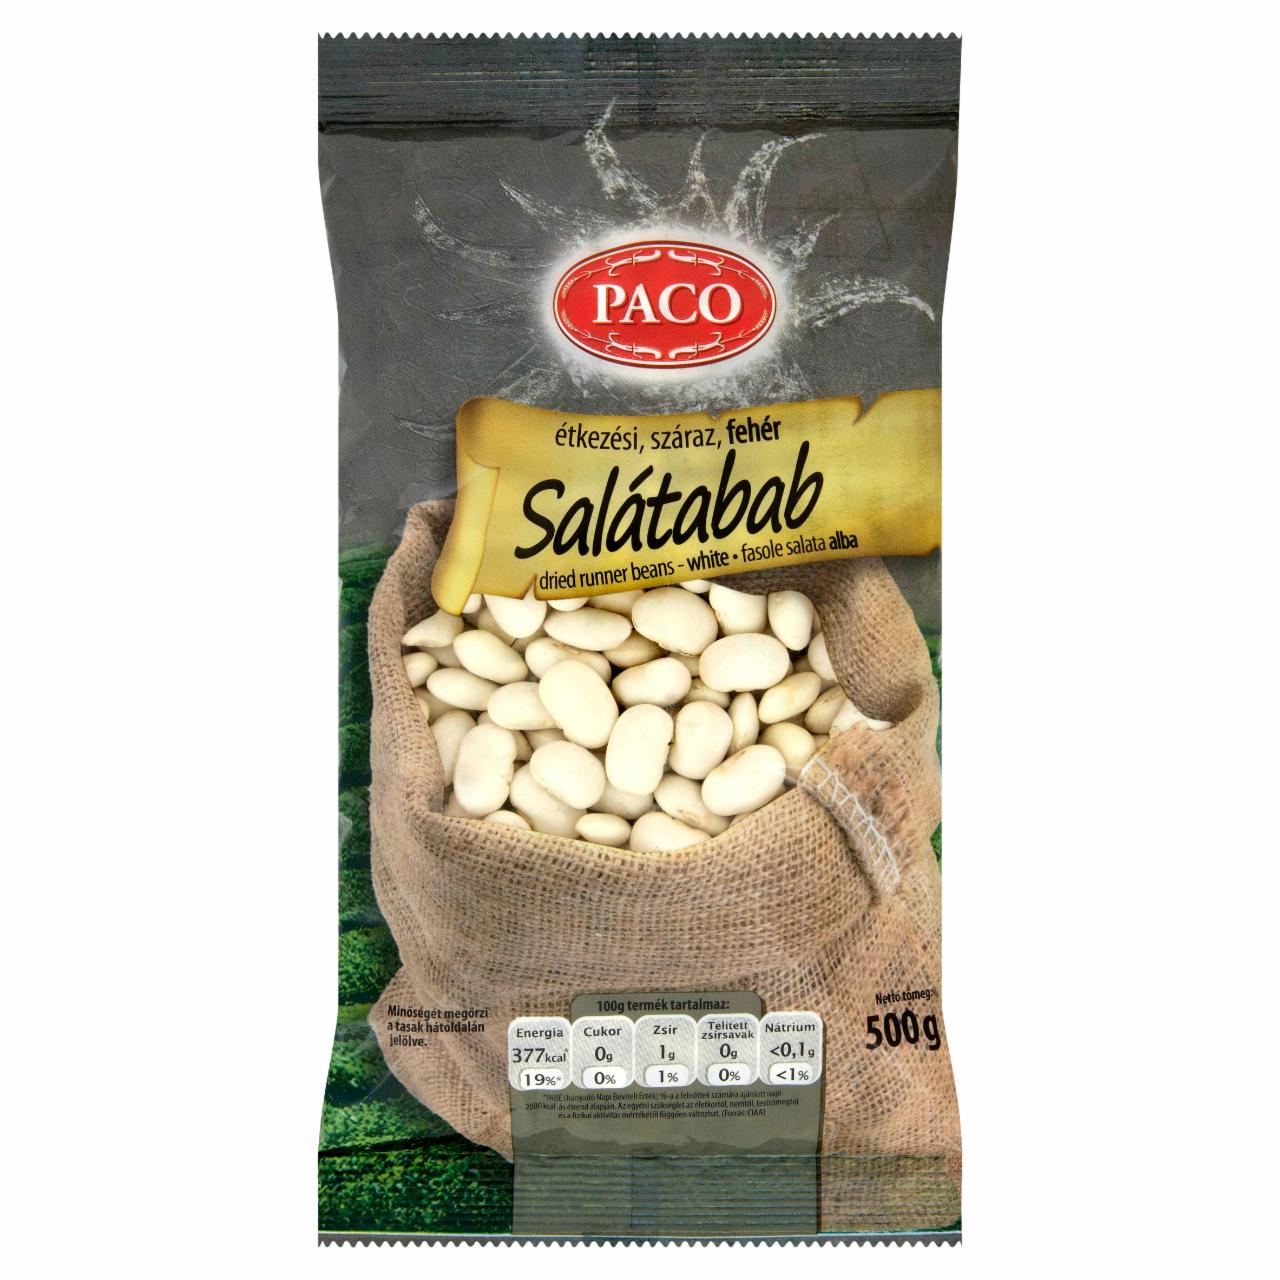 Képek - Paco étkezési száraz fehér salátabab 500 g